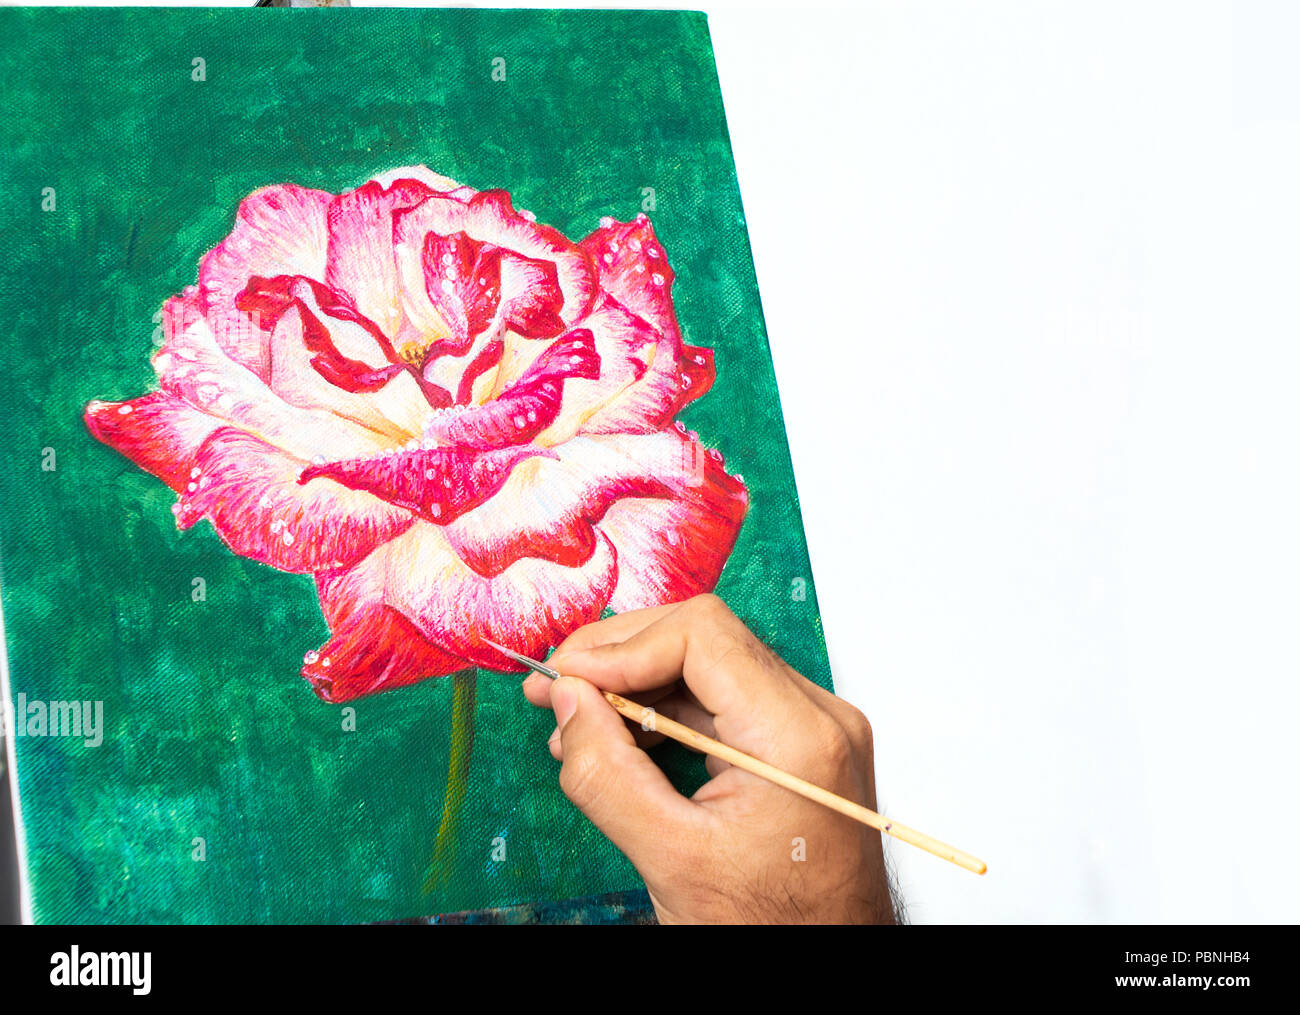 Asiatische Künstler Malerei rote Rose Blume auf grünem Hintergrund mit  Acryl auf Leinwand Stockfotografie - Alamy